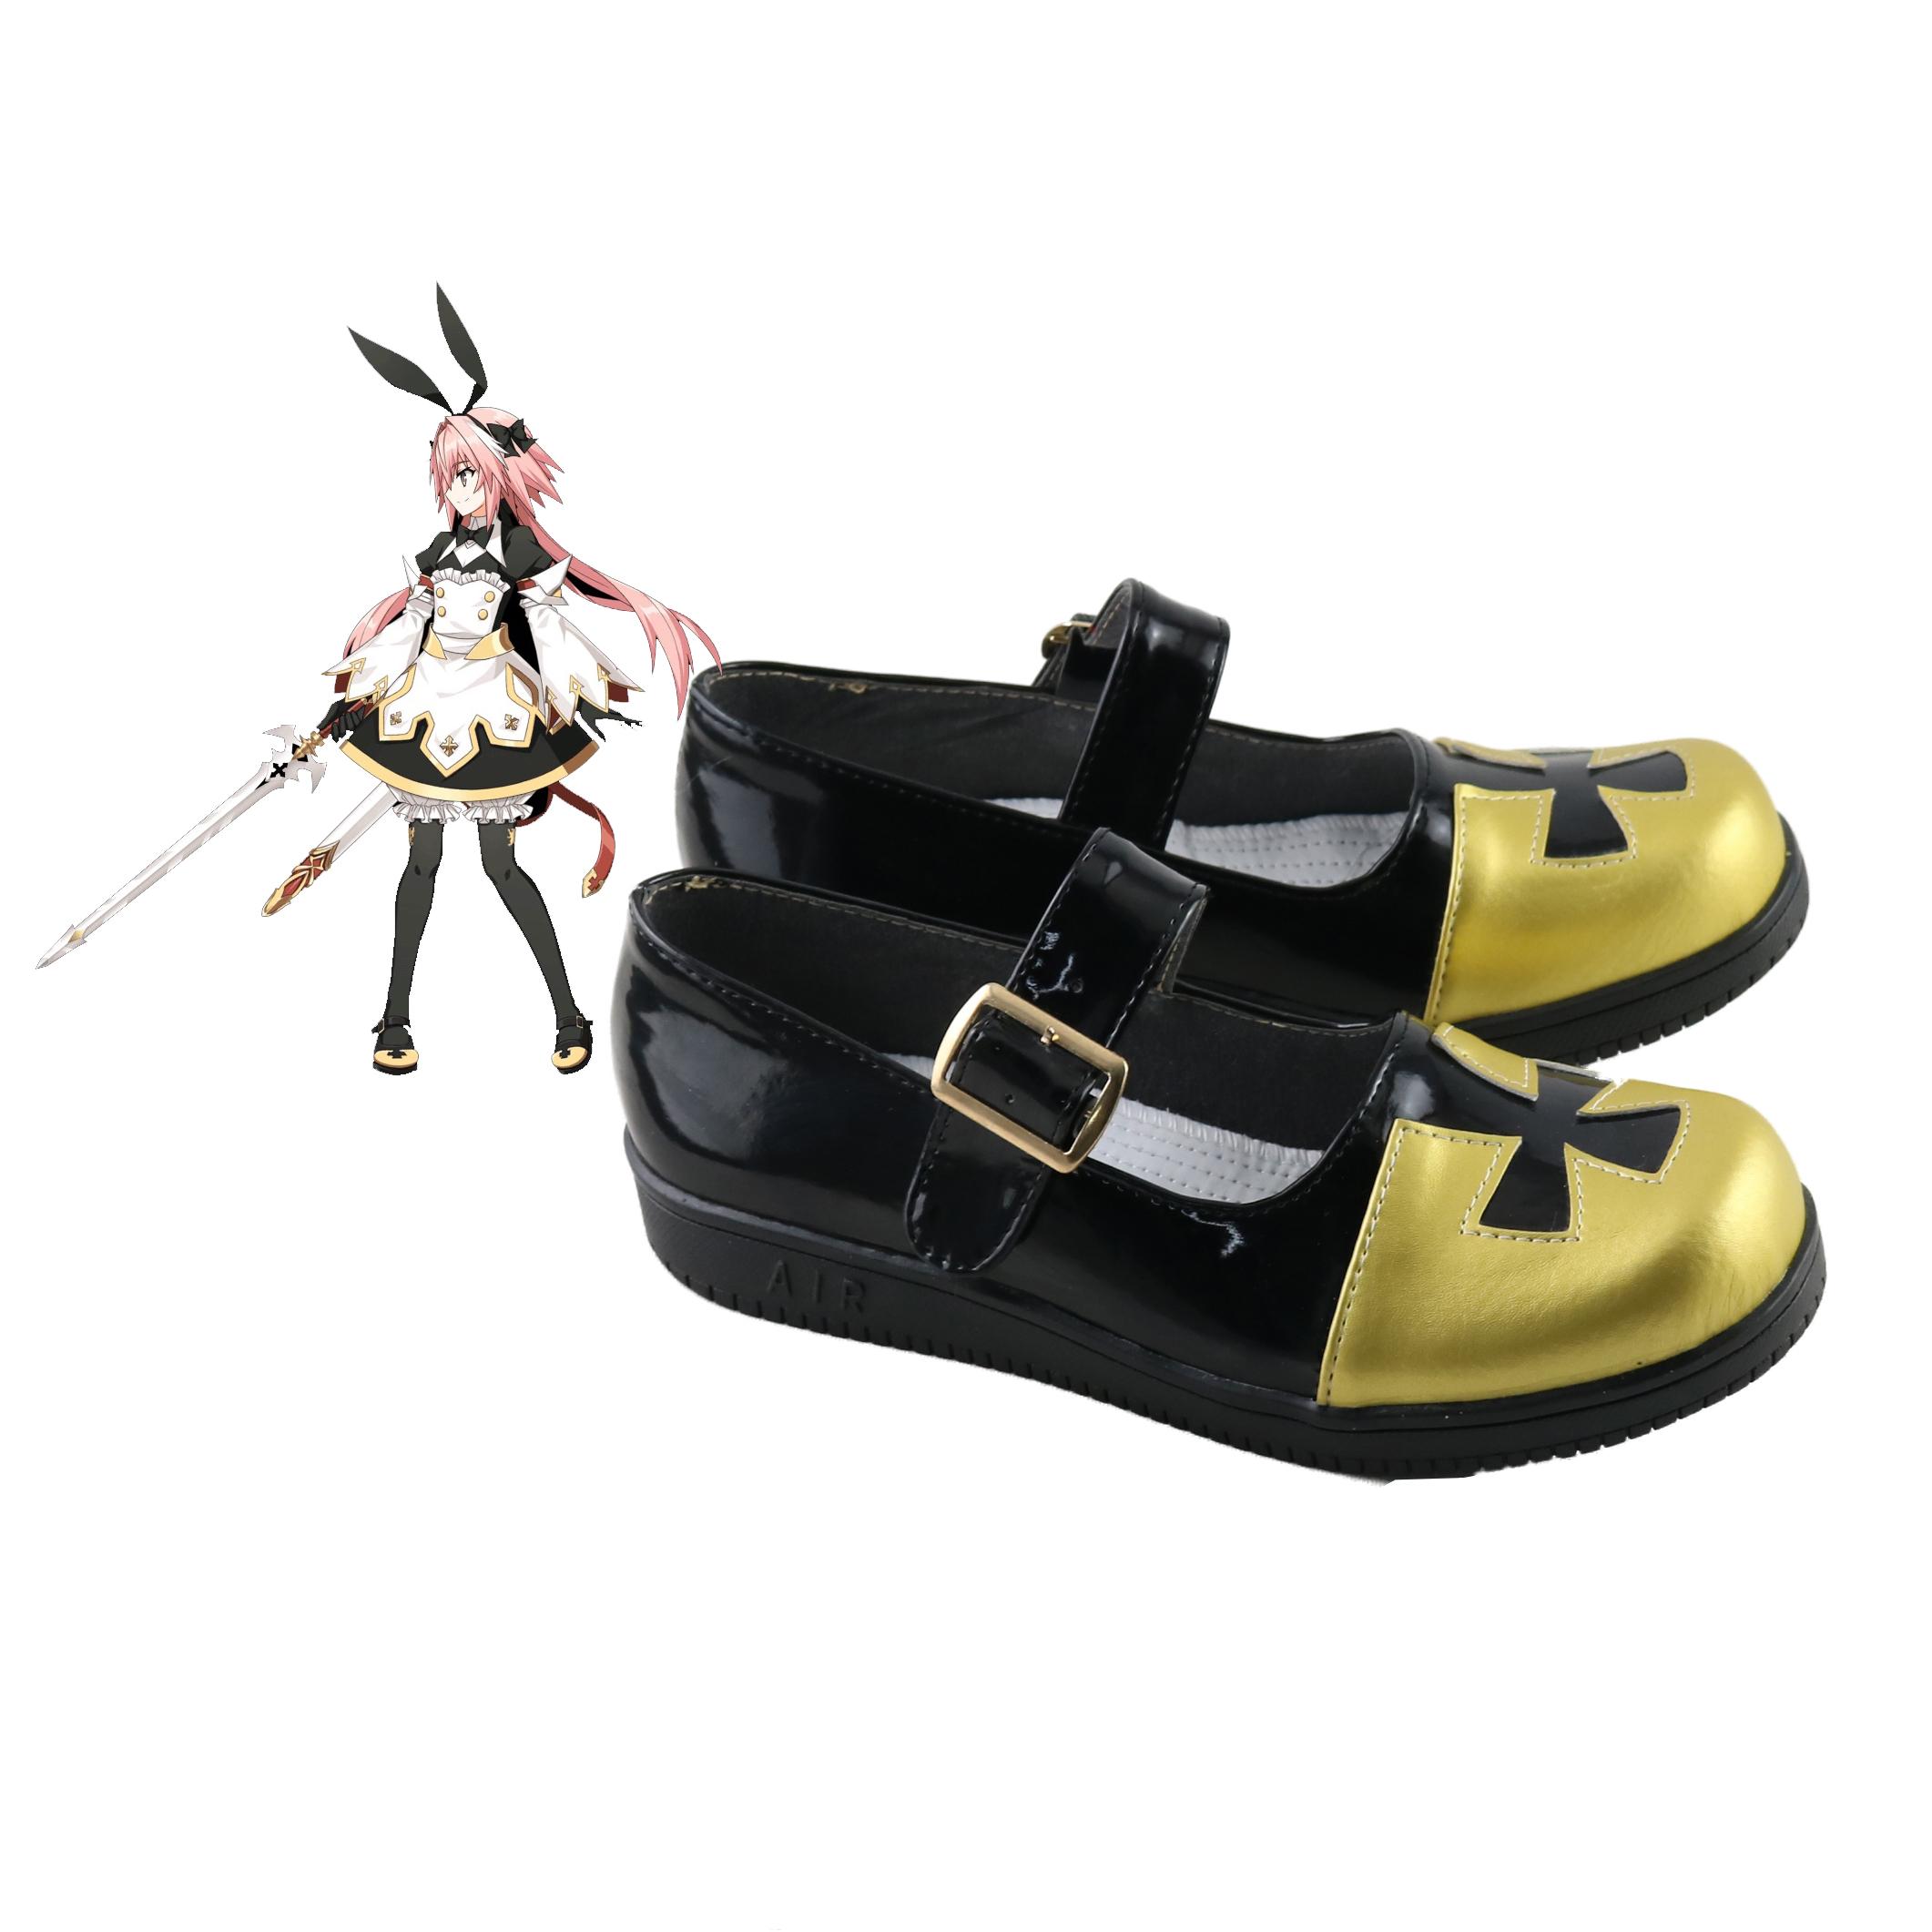 Изображение товара: Fate Grand Order/FGO Astolfo (Saber) Этап 3 косплей костюм обувь Рыцарь испарителя Sanity Хэллоуин косплей обувь милая женщина